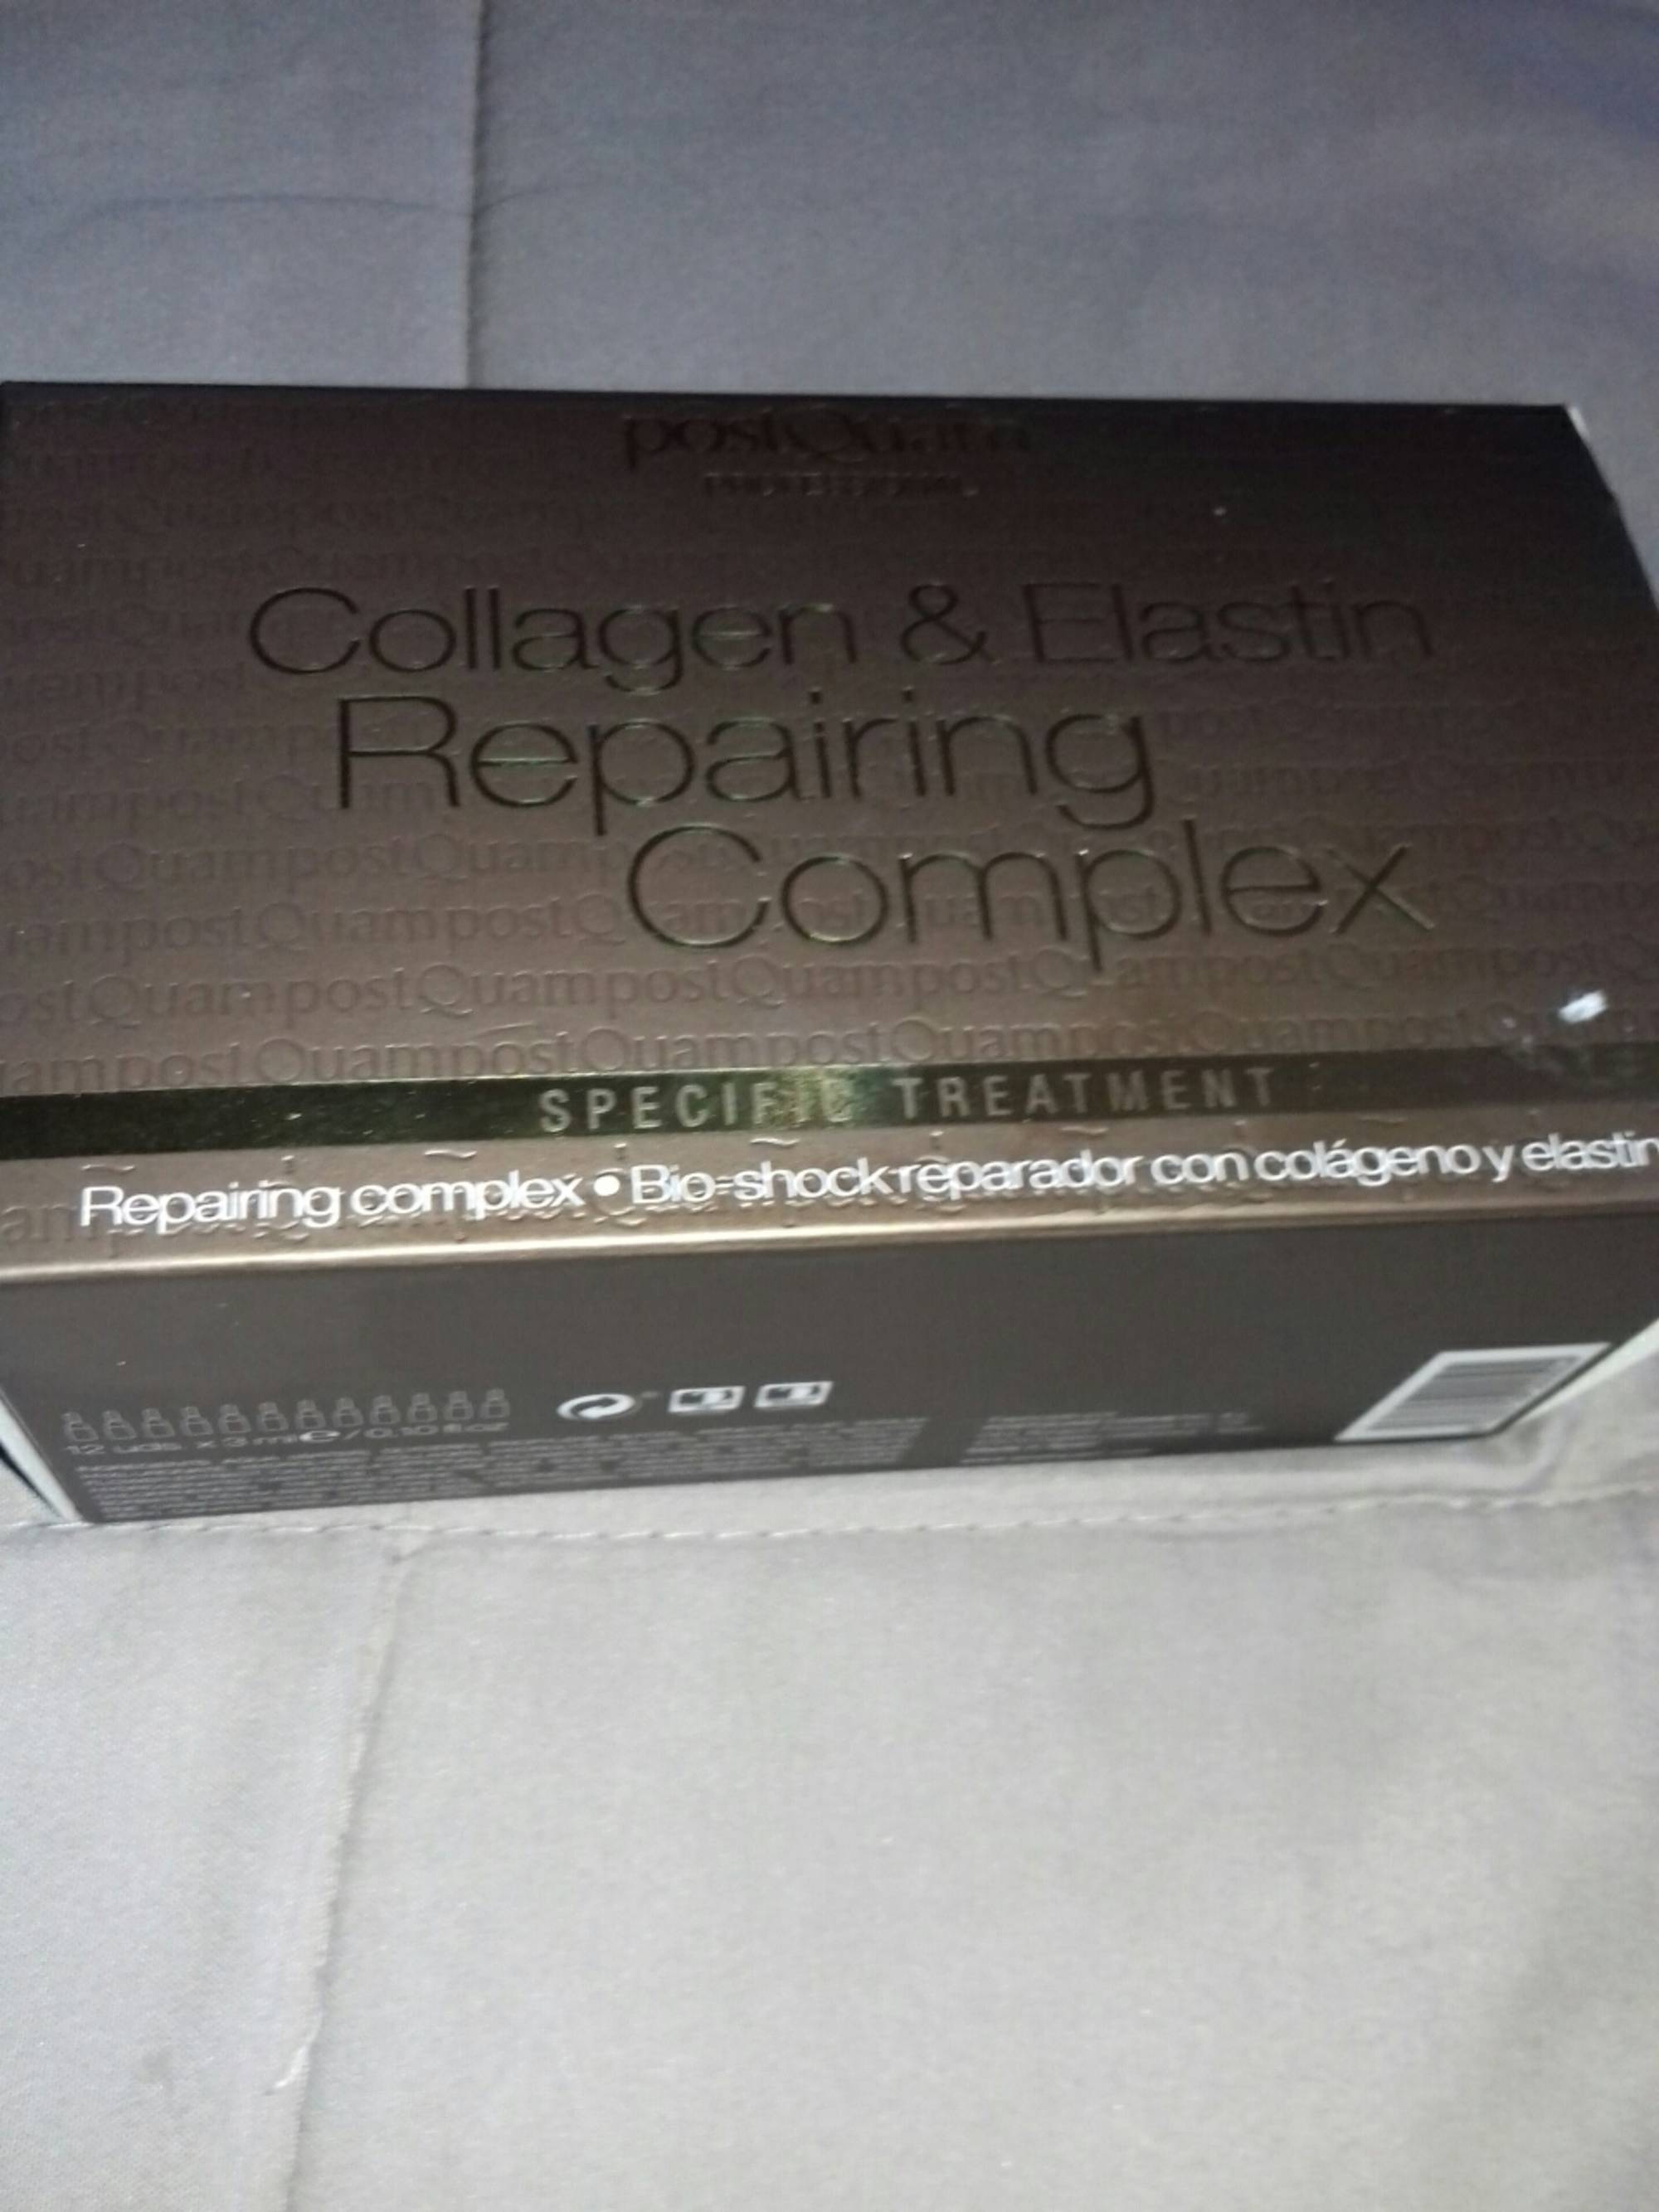 POSTQUAM - Collagen & elastin - Repairing complex